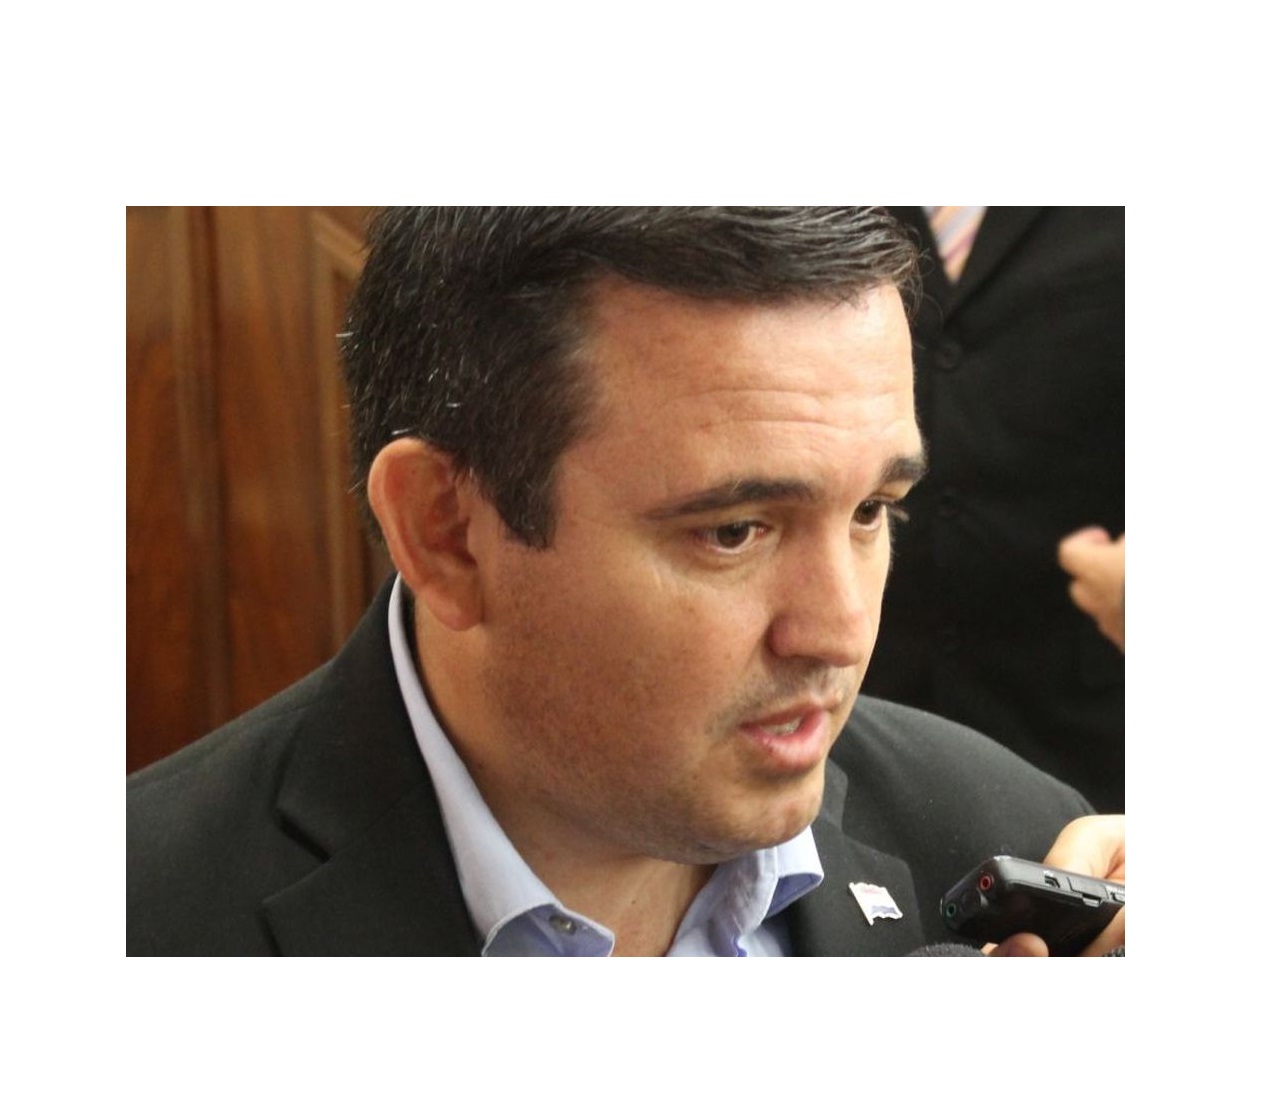 “Él juega en contra de los intereses del partido”: Convencionales de la ANR piden expulsión de Eduardo Petta